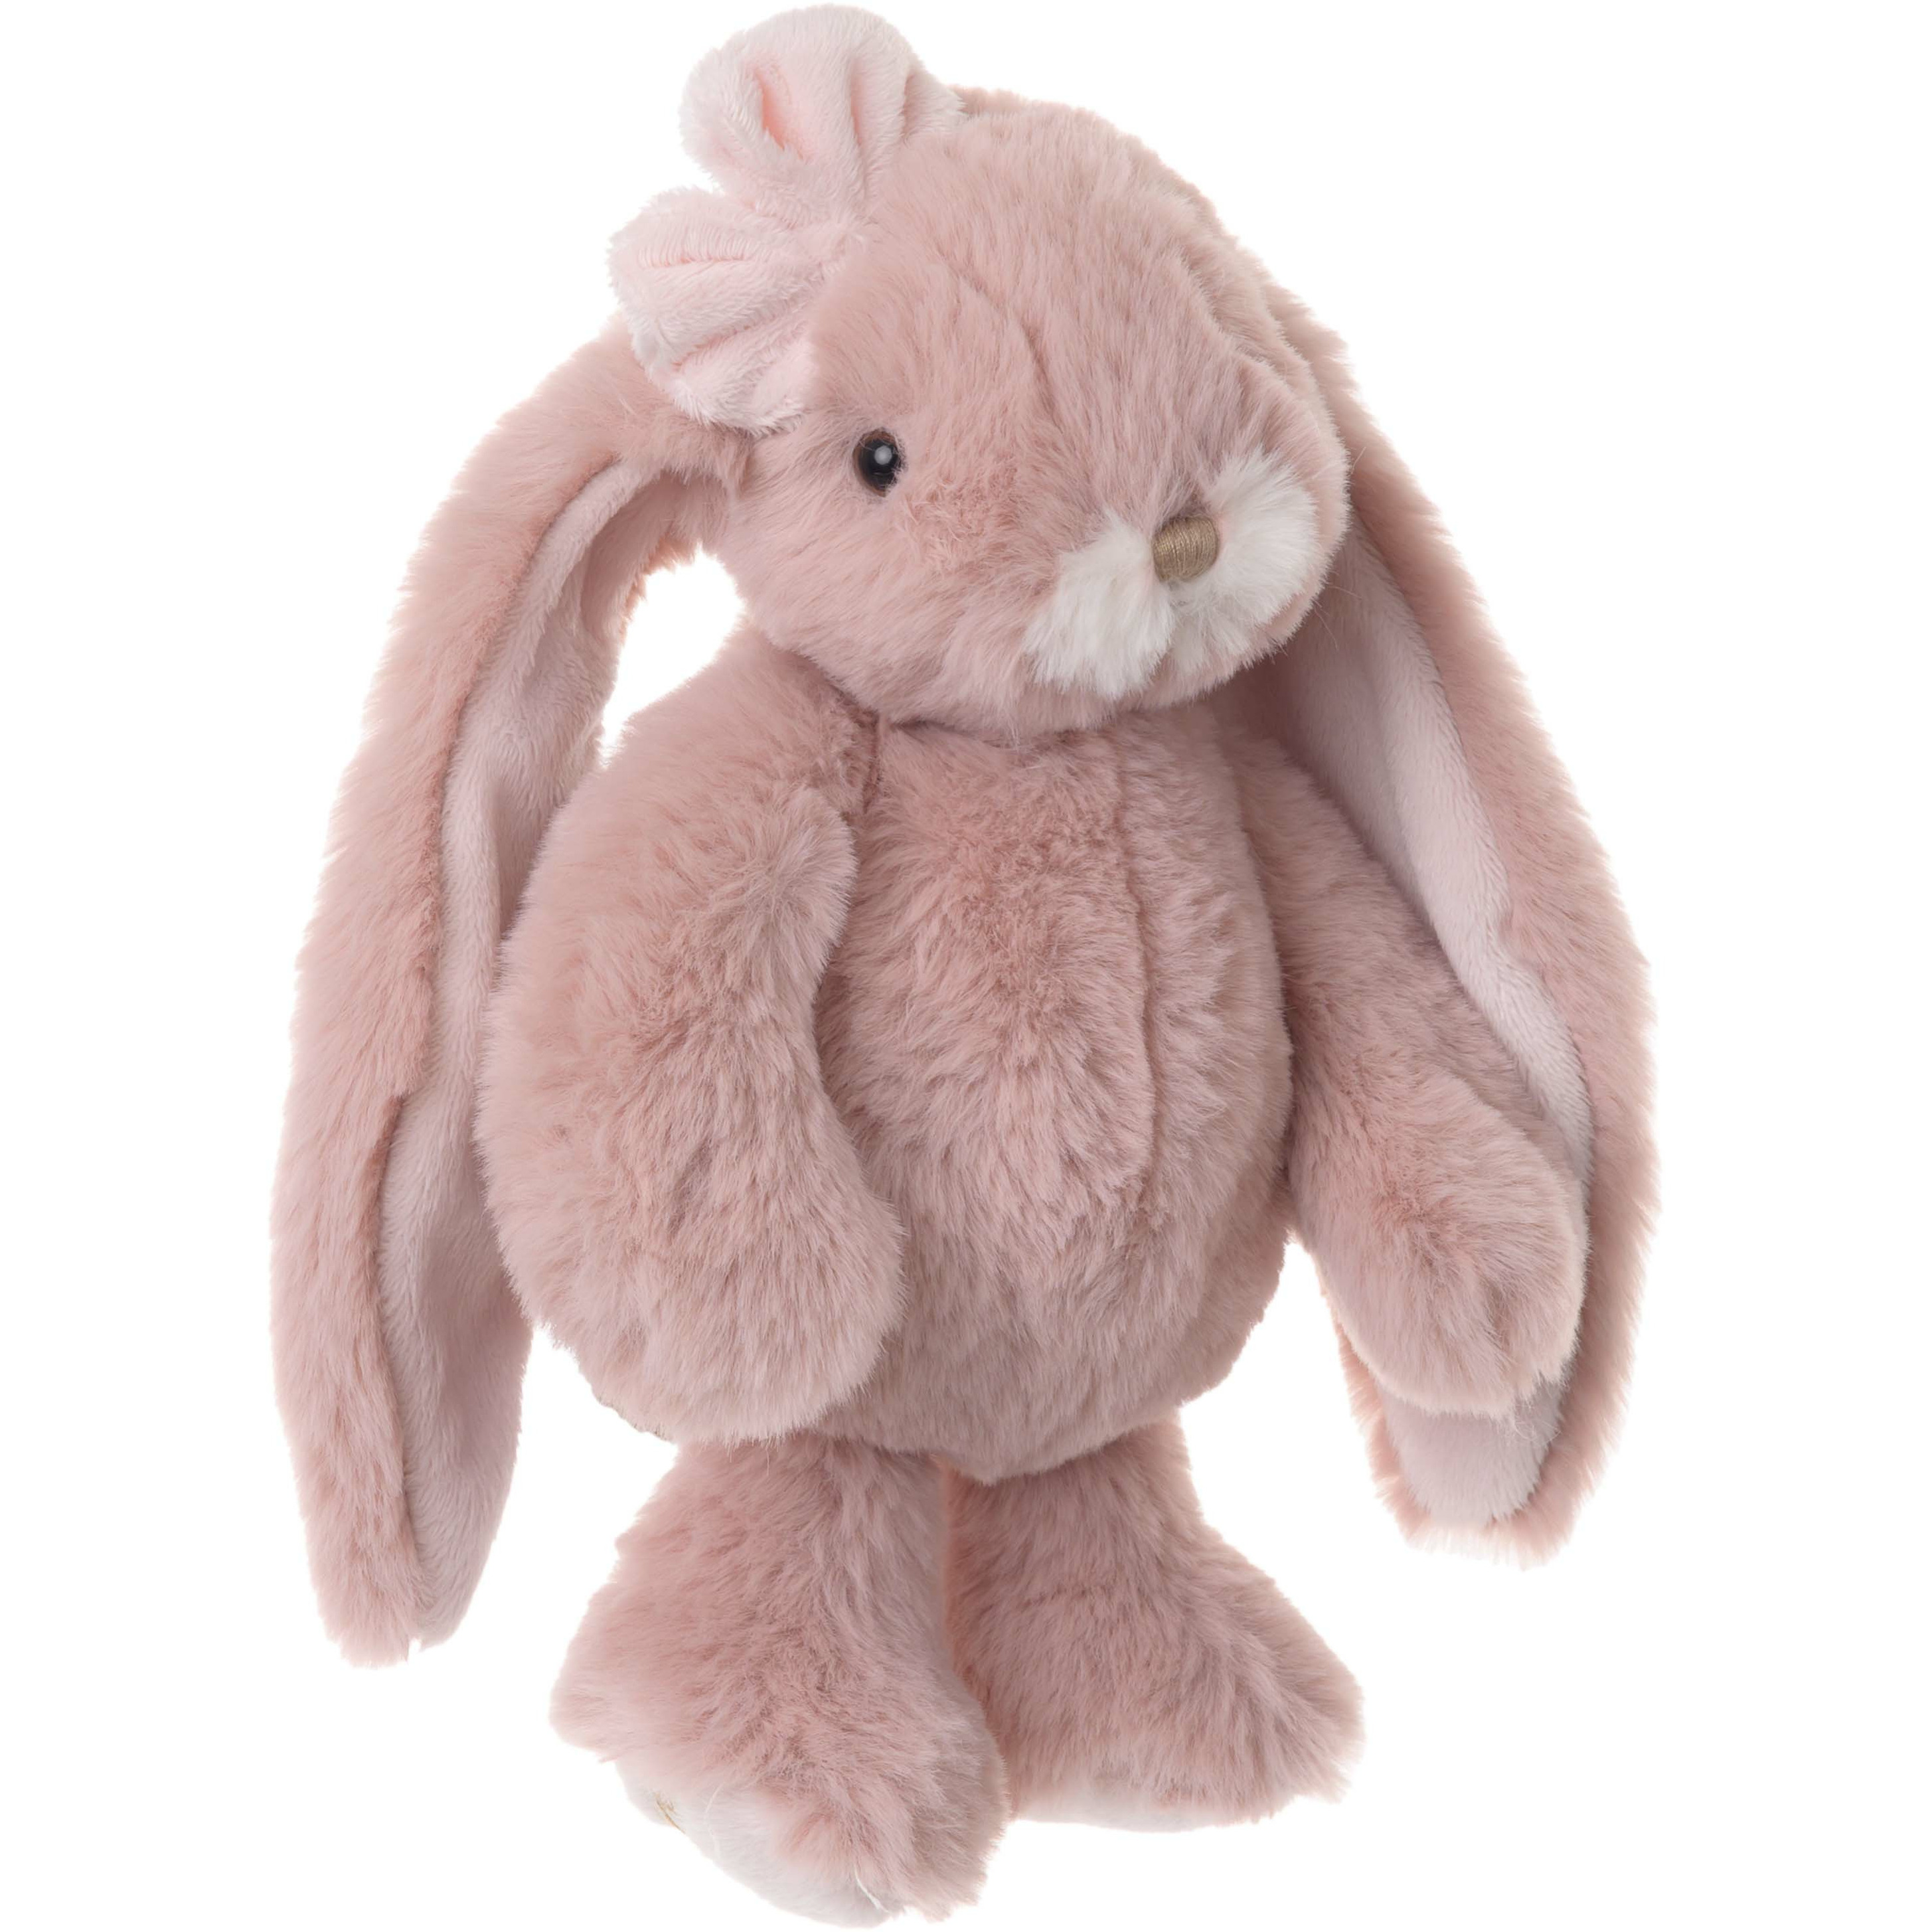 Bukowski pluche konijn knuffeldier oud roze staand 22 cm luxe knuffels